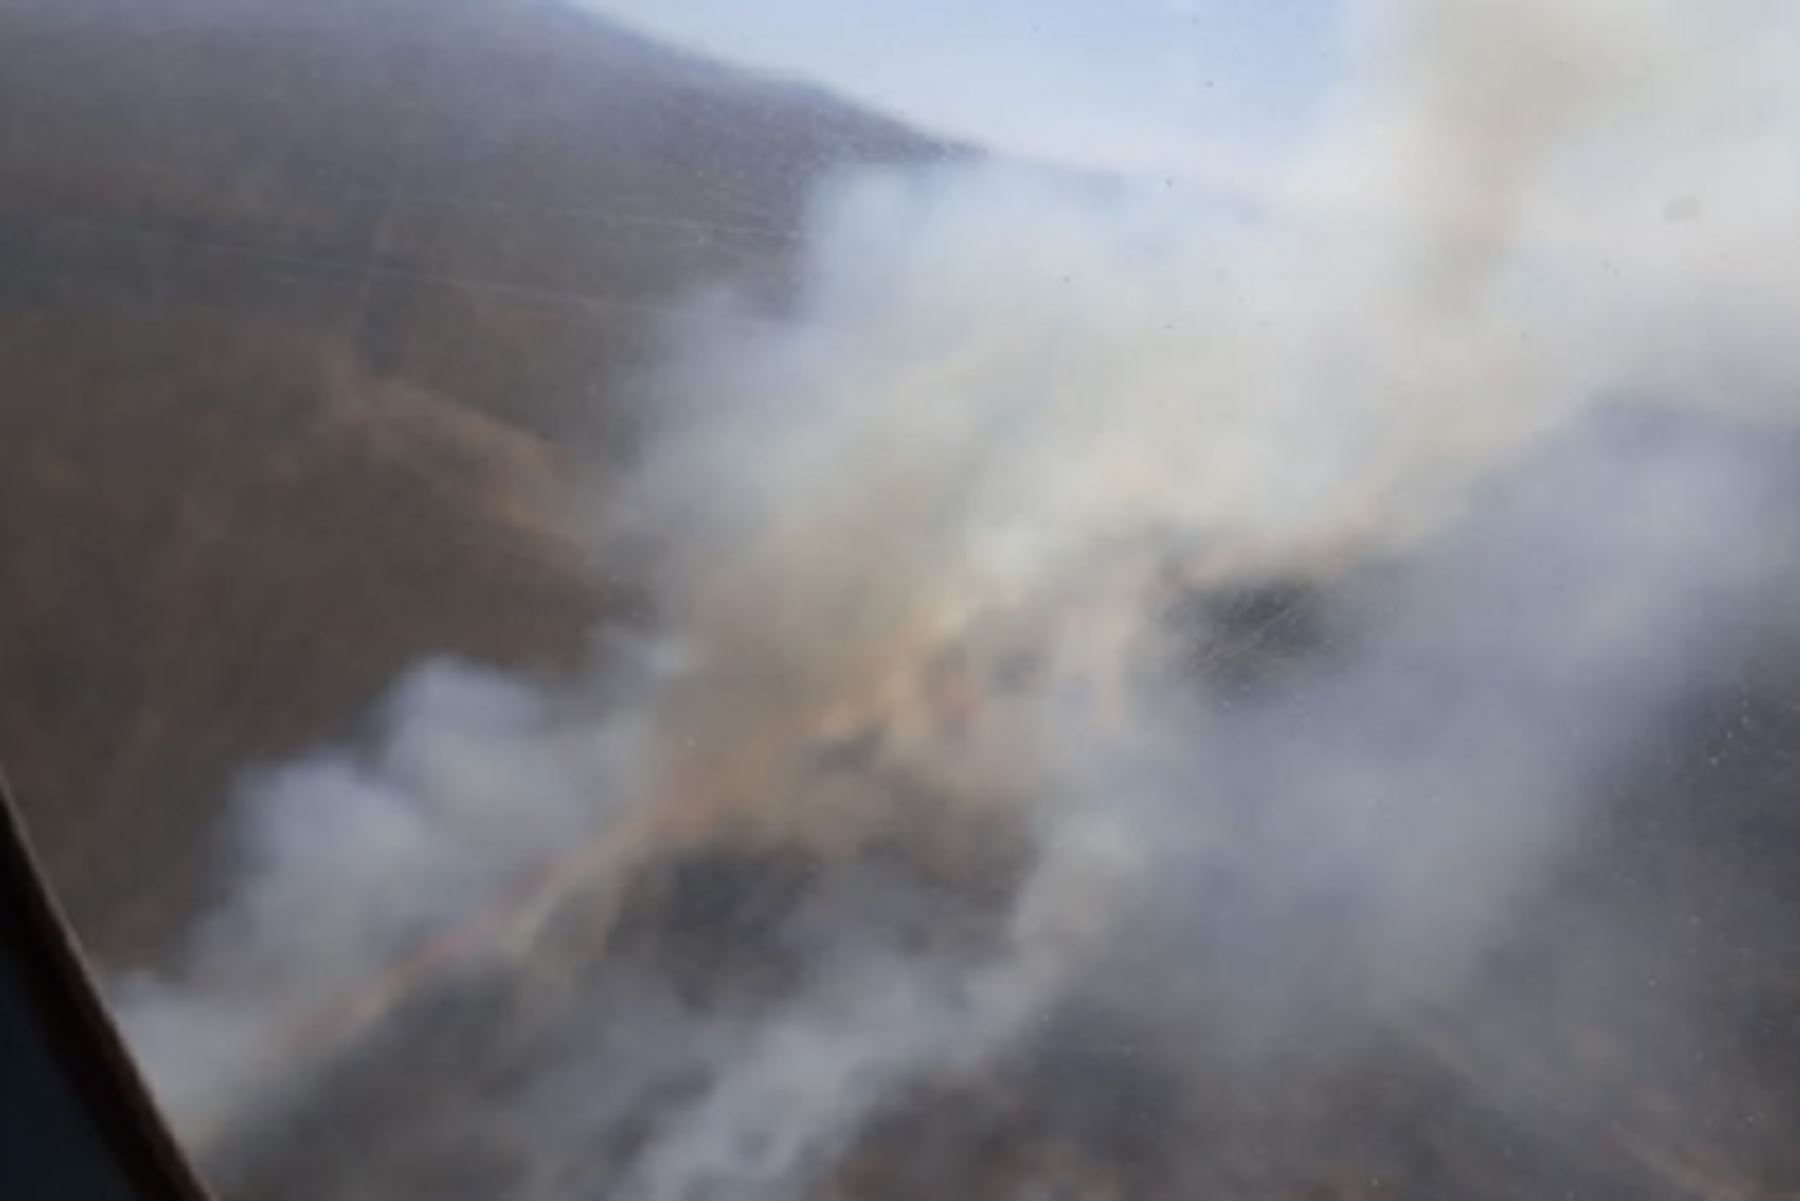 Al menos 1,000 hectáreas de pastos naturales fueron consumidos por el fuego en el distrito de Polobaya, región Arequipa, donde se registra un incendio forestal desde ayer, informó Luis Felipe Gonzales, administrador técnico forestal y de fauna silvestre.